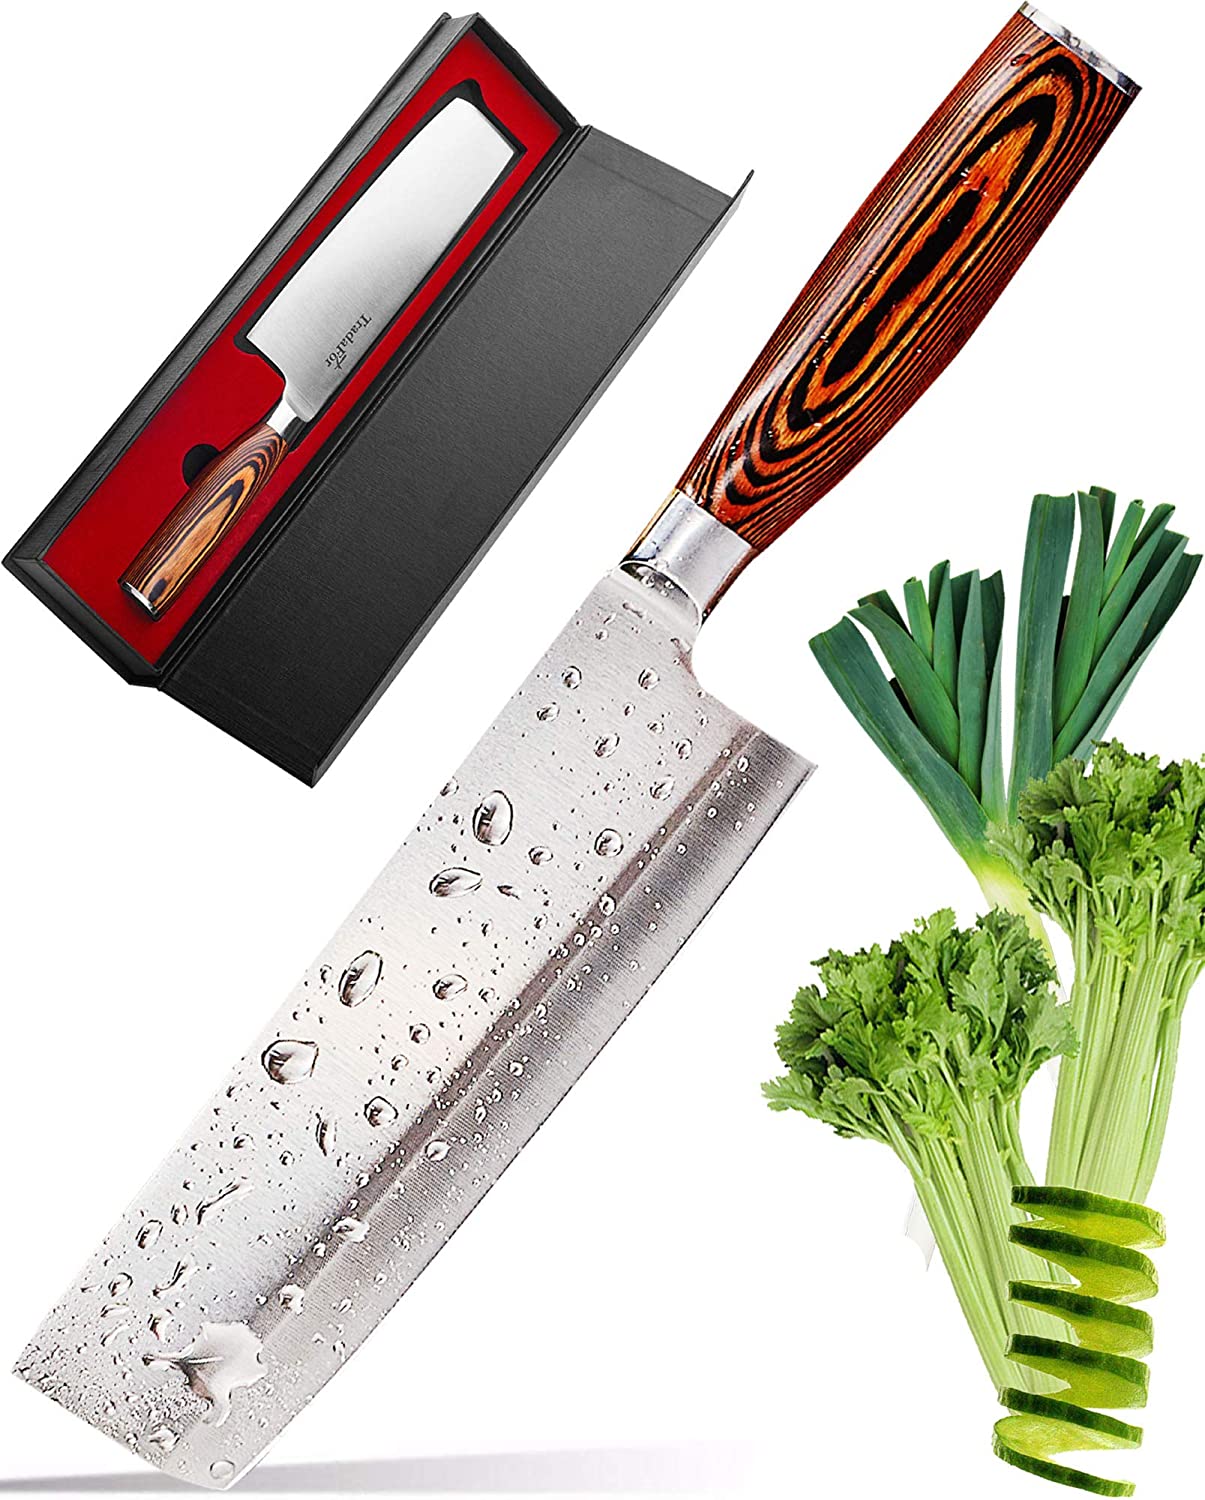 TradaFor Vegetable Knife - Japanese Chef Knife